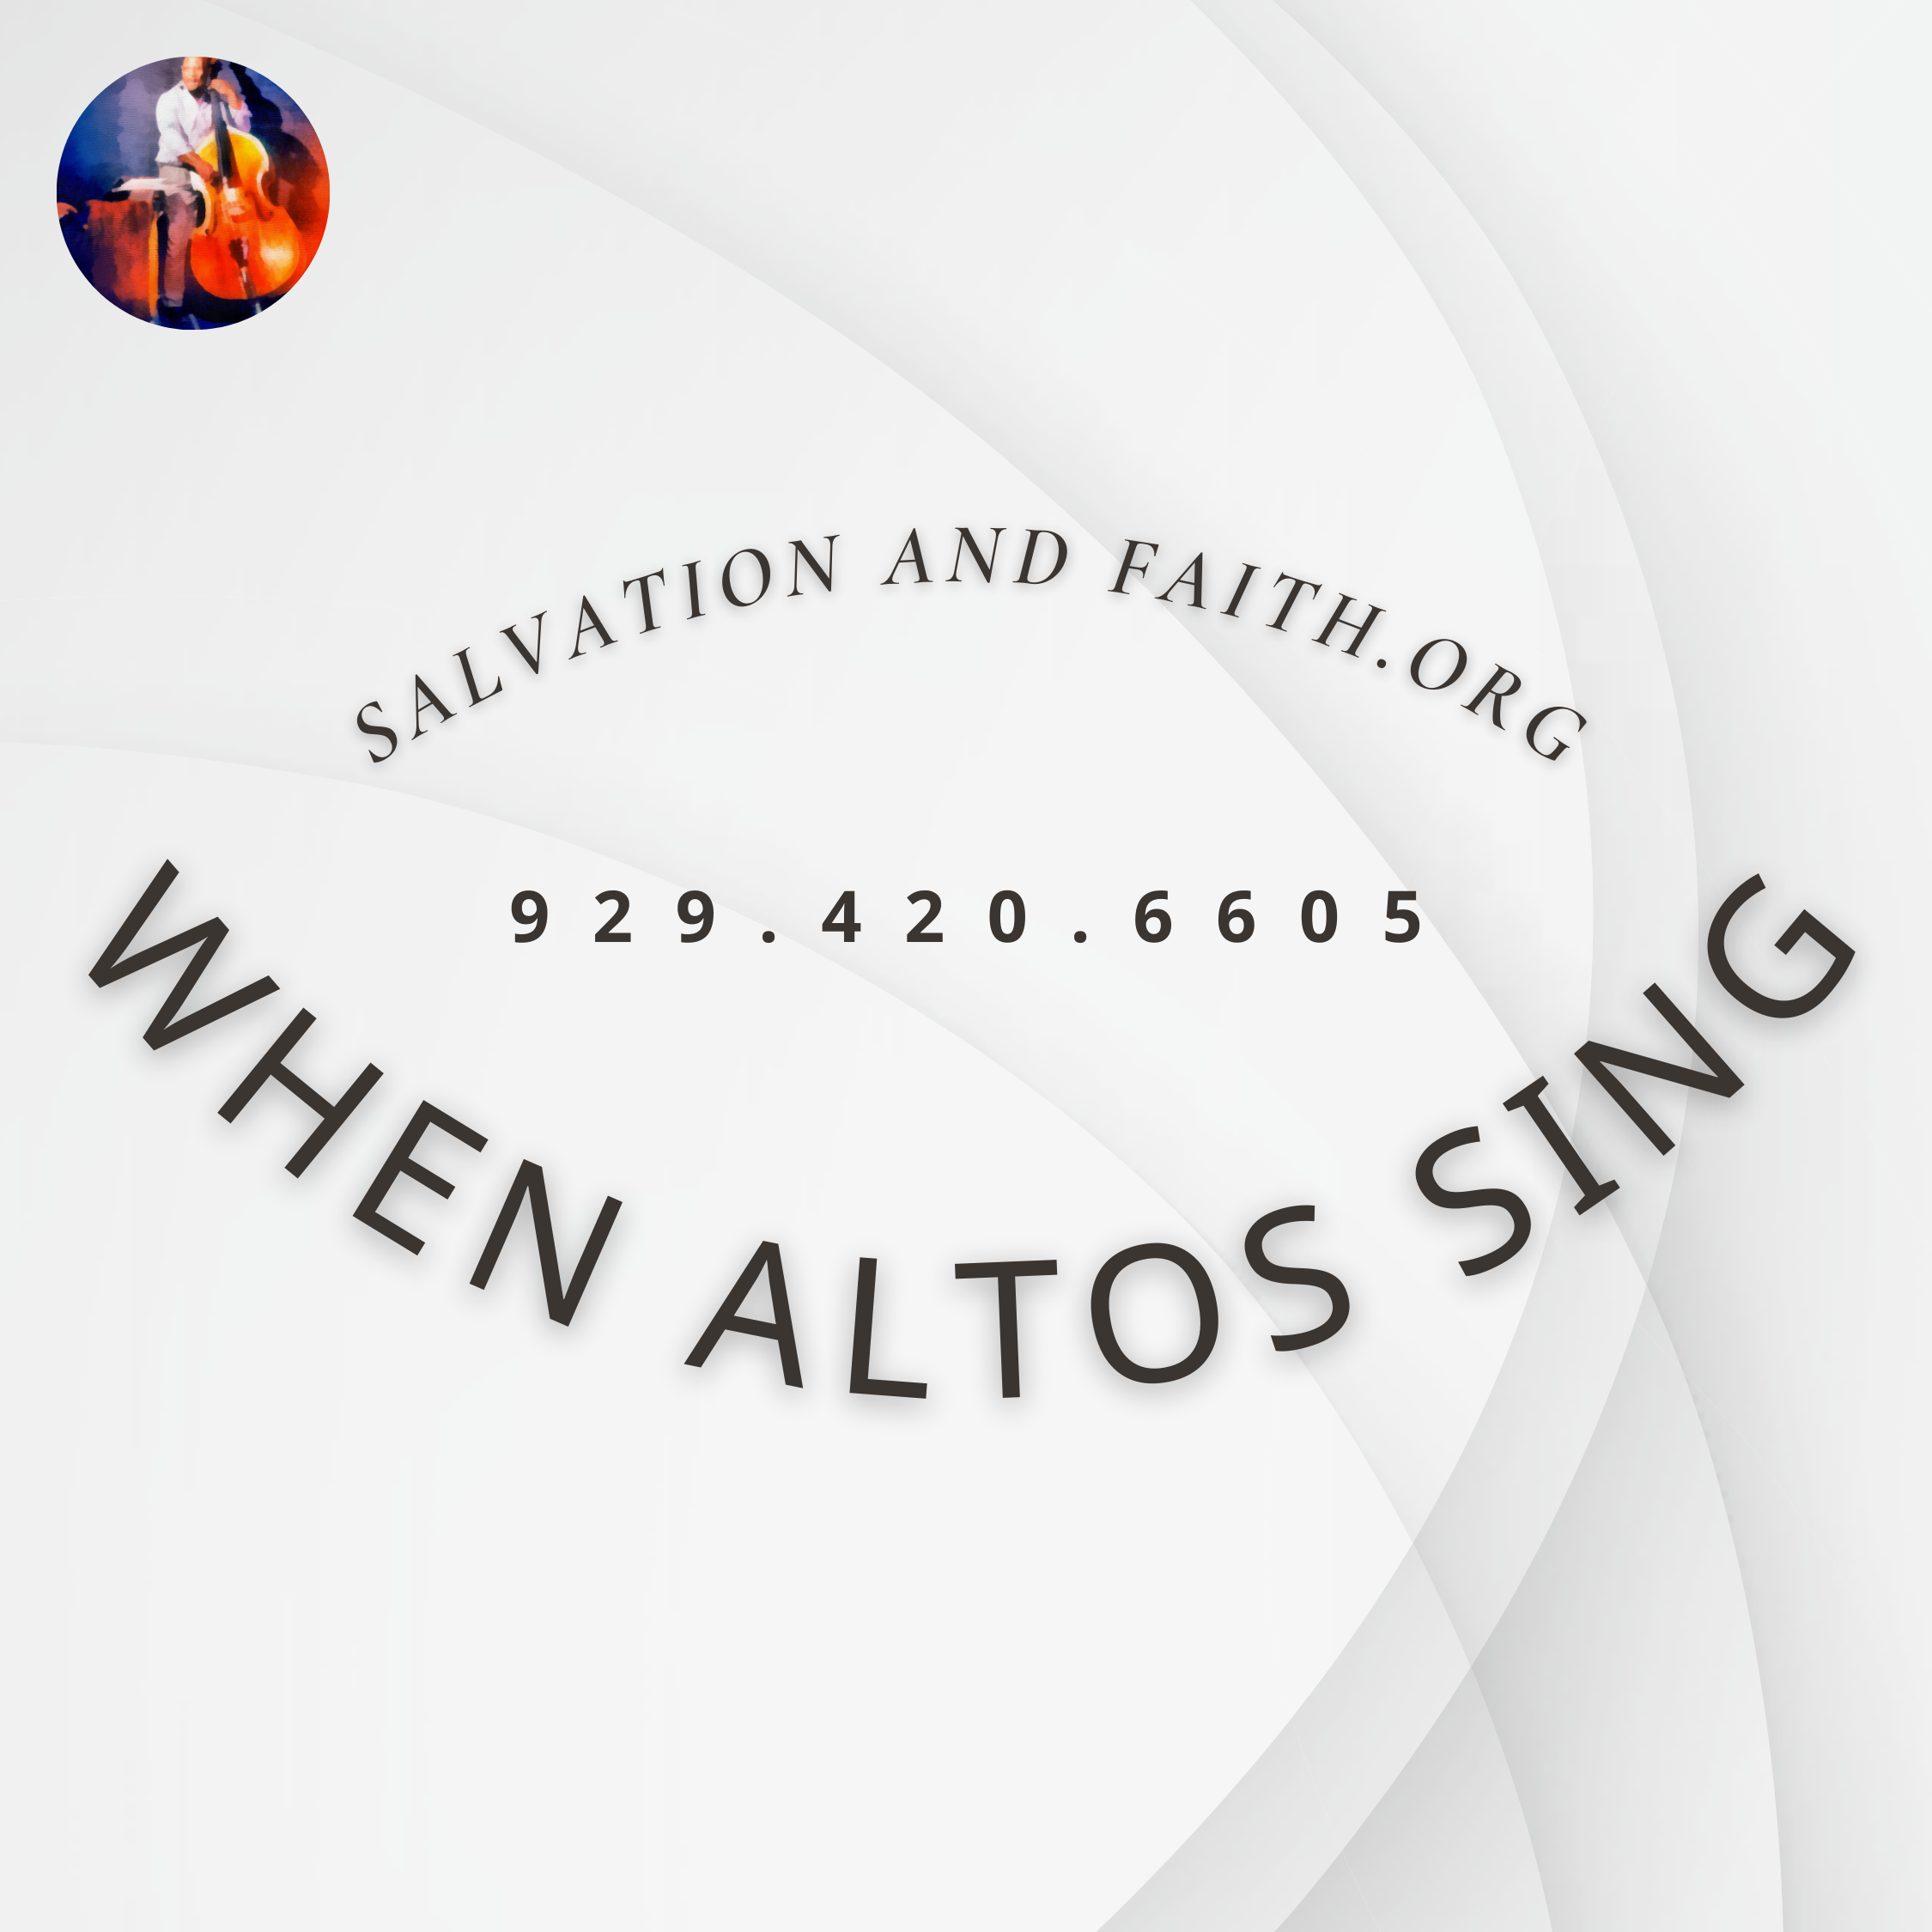 When Altos Sing